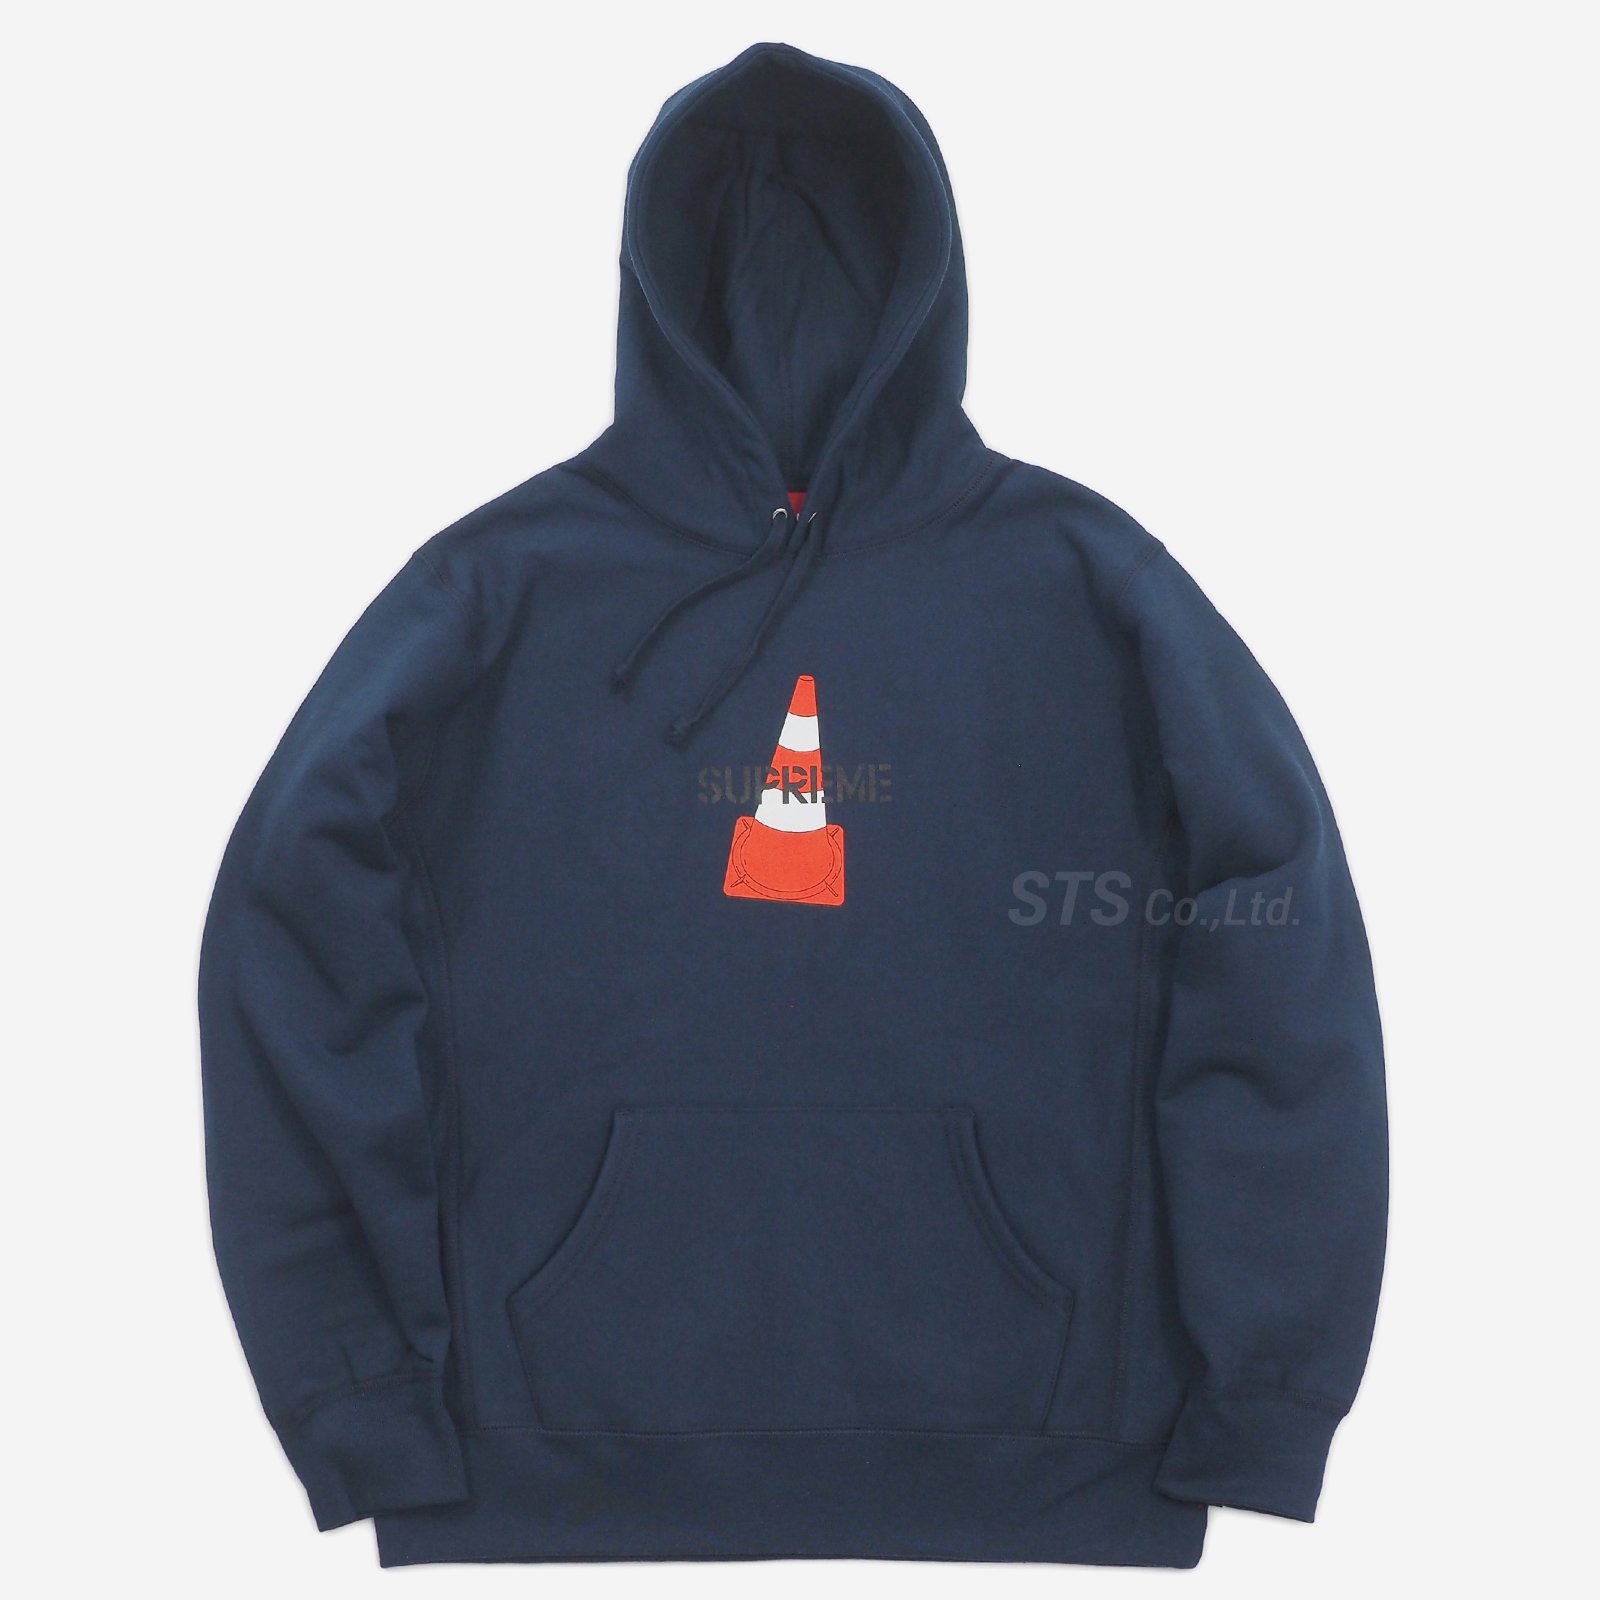 escstudiomosupreme cone hooded sweatshirt XL